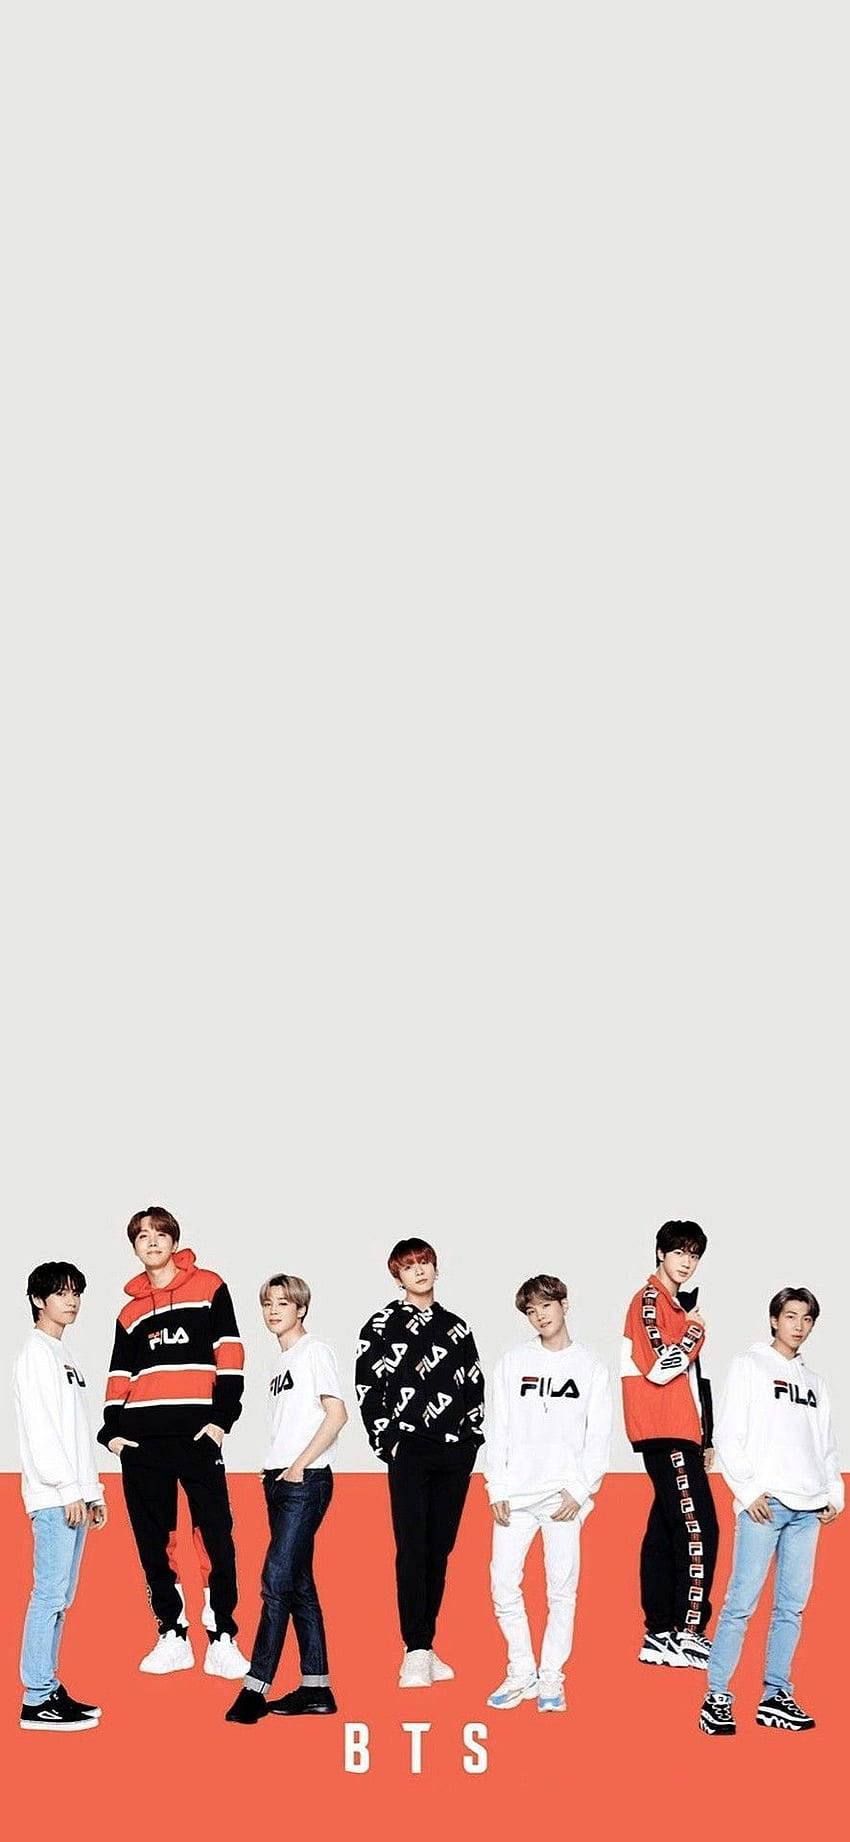 Fremvis medlemmer af BTS som baggrund Wallpaper